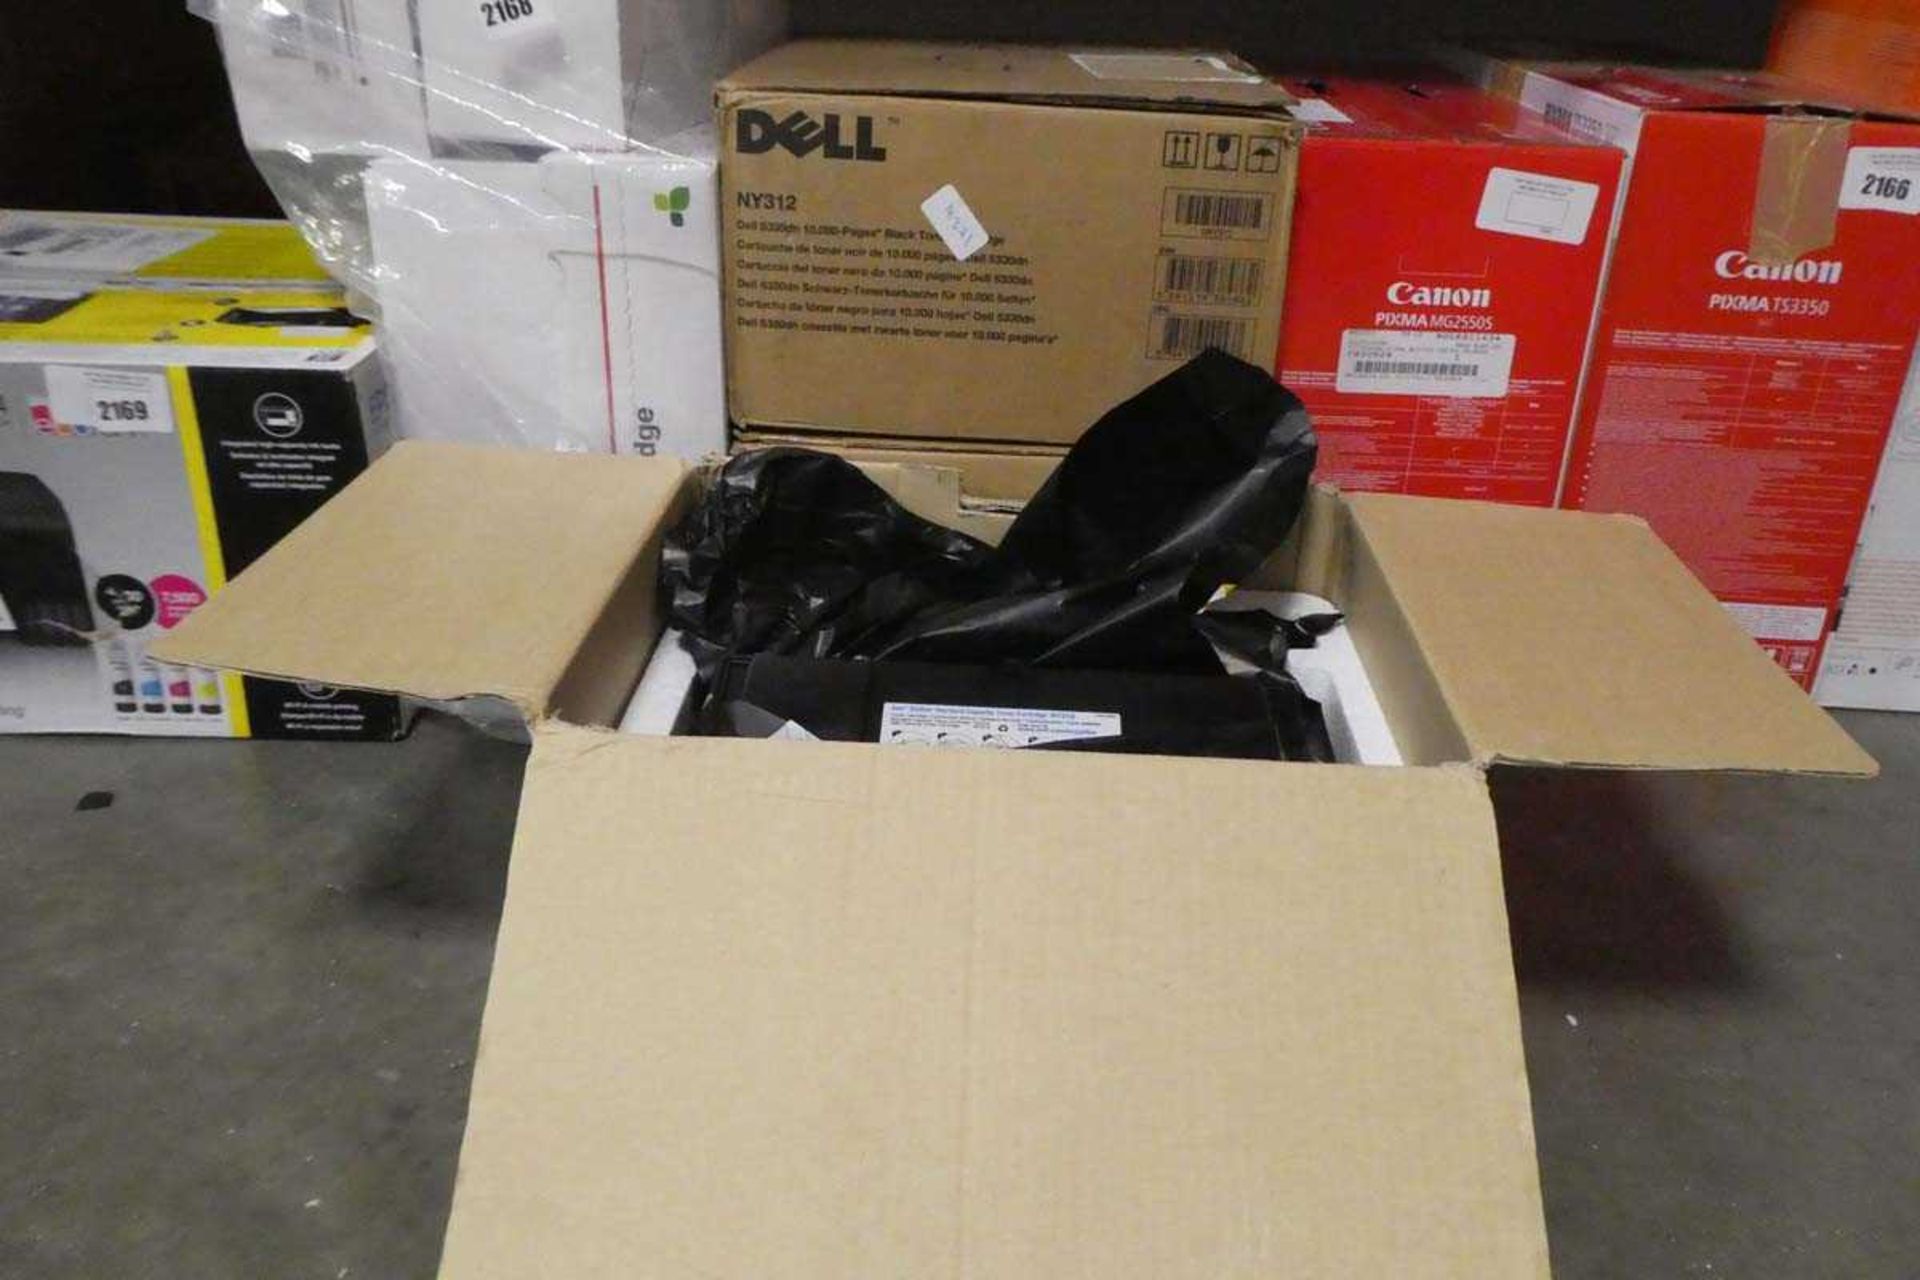 3 boxed Dell toner cartridges in black NY312